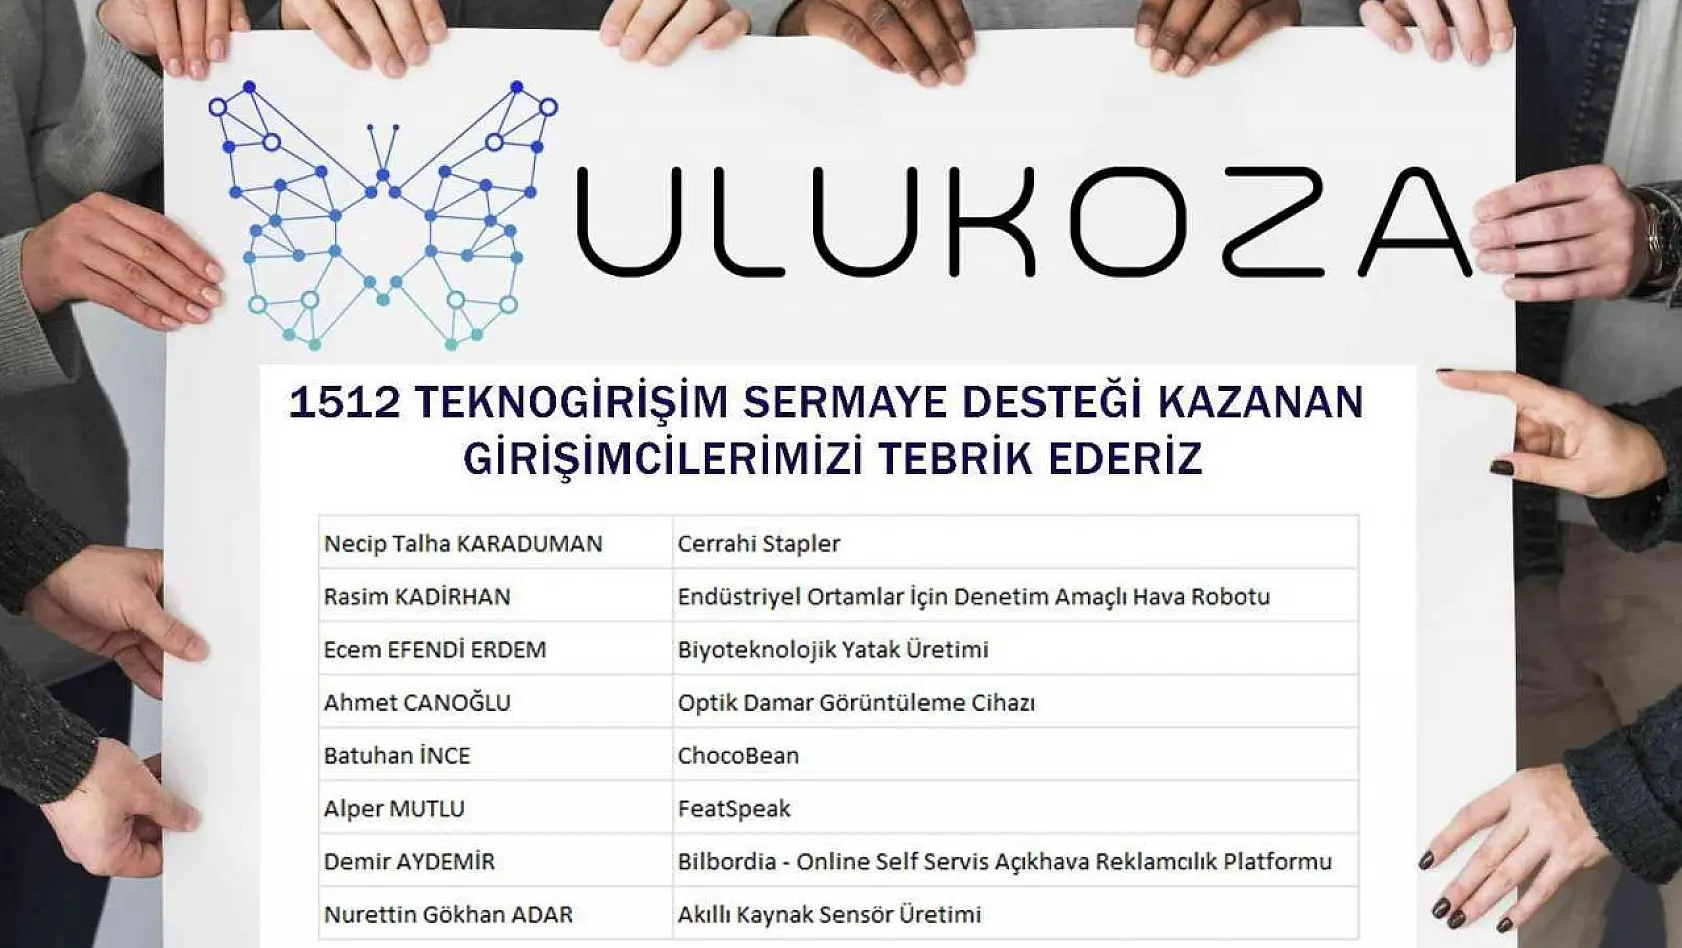 ULUKOZA'dan 8 girişimci daha proje başına 450 Bin TL hibe ile şirketleşmeye hak kazandı